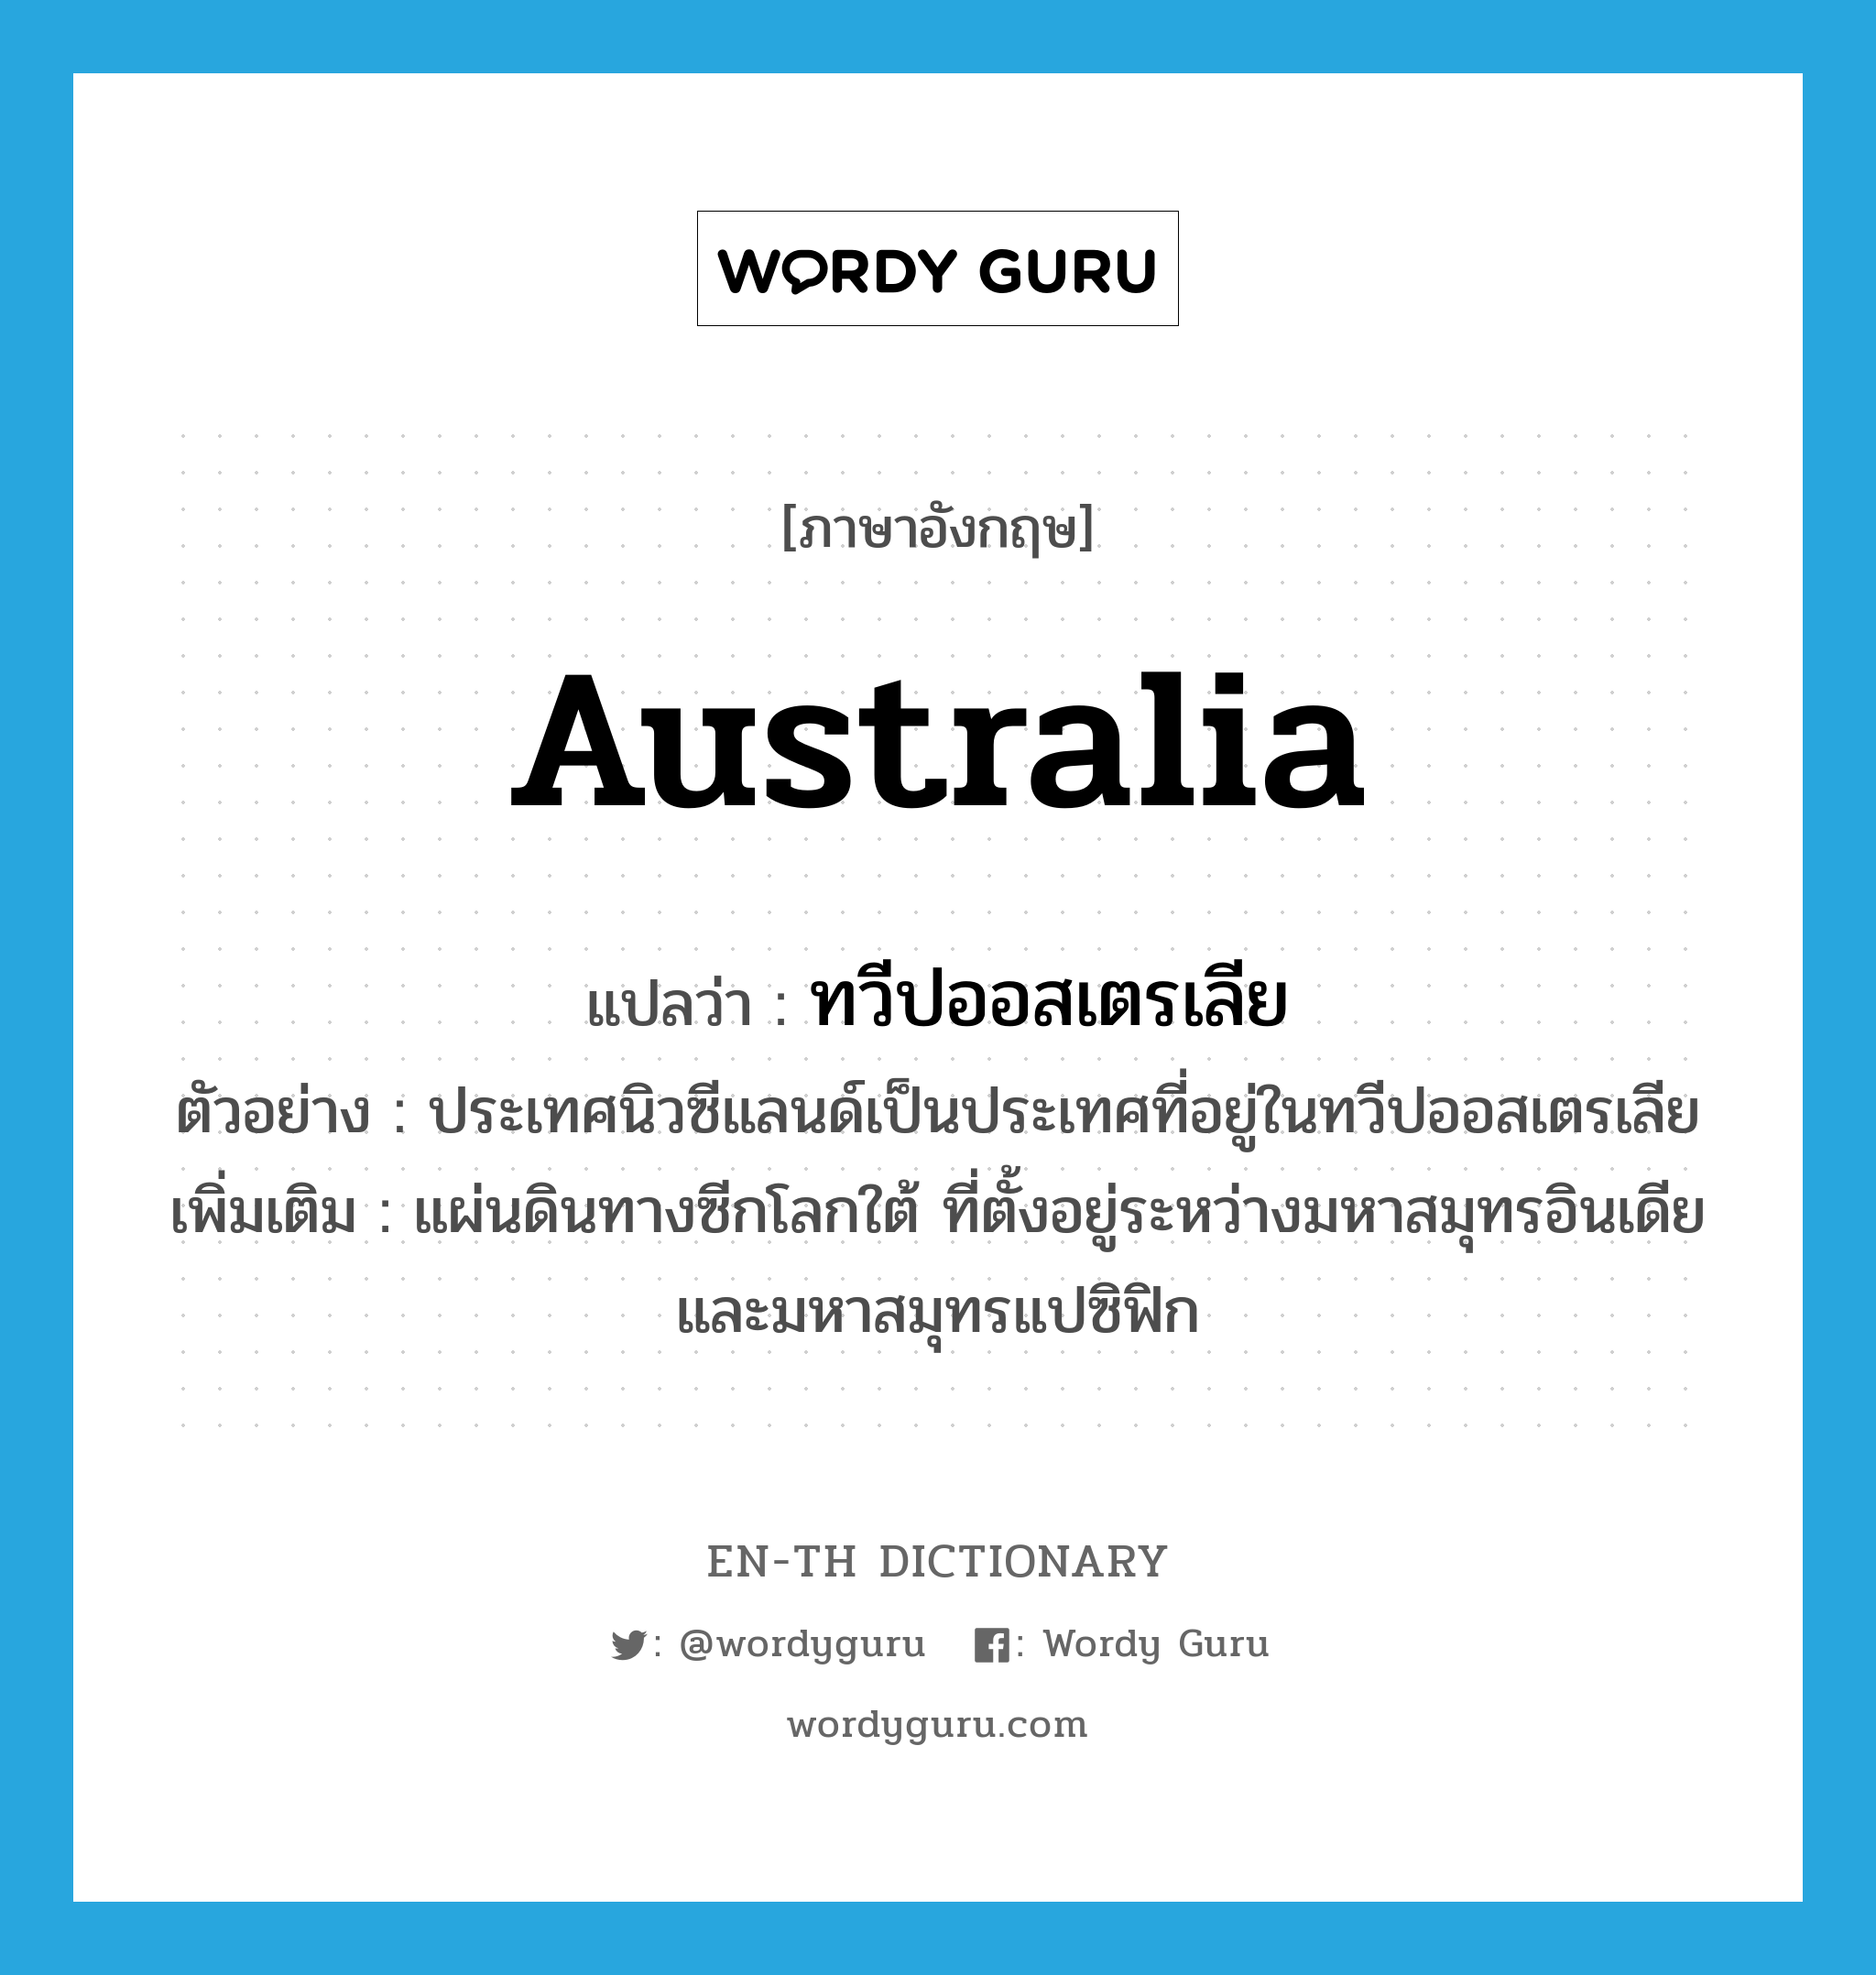 ทวีปออสเตรเลีย ภาษาอังกฤษ?, คำศัพท์ภาษาอังกฤษ ทวีปออสเตรเลีย แปลว่า Australia ประเภท N ตัวอย่าง ประเทศนิวซีแลนด์เป็นประเทศที่อยู่ในทวีปออสเตรเลีย เพิ่มเติม แผ่นดินทางซีกโลกใต้ ที่ตั้งอยู่ระหว่างมหาสมุทรอินเดียและมหาสมุทรแปซิฟิก หมวด N